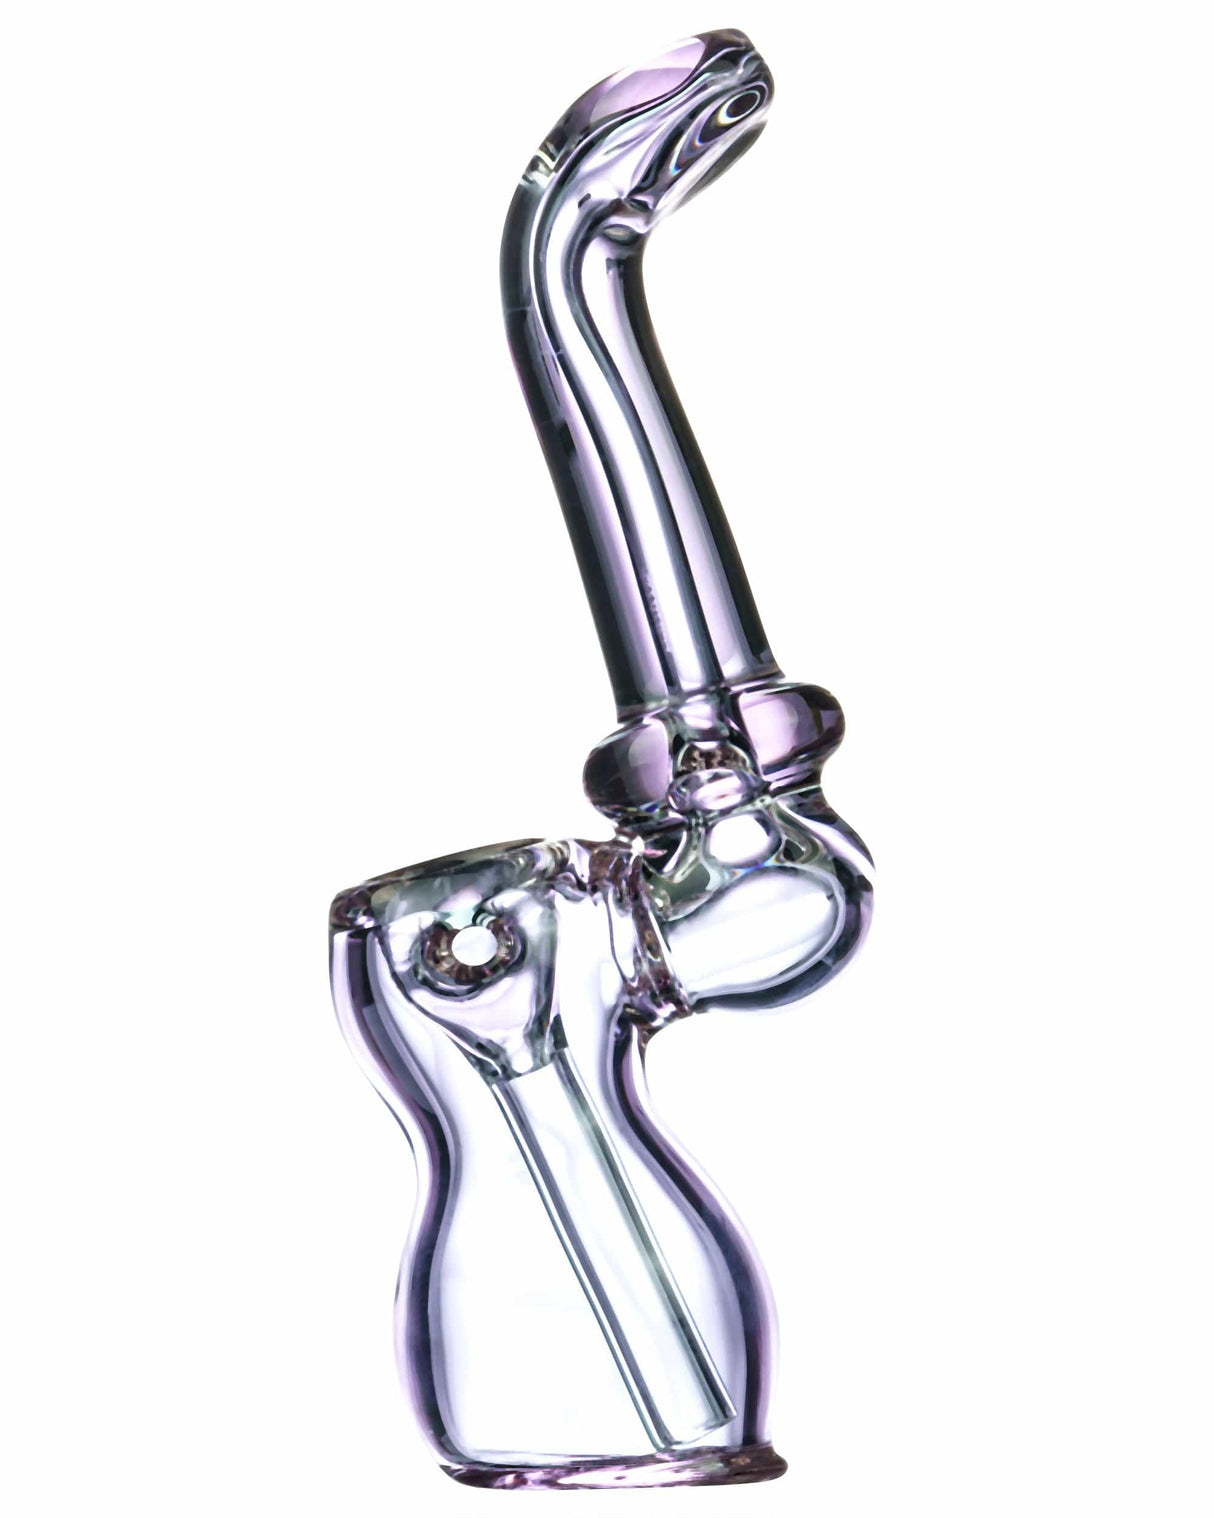 Dankstop Colored Glass Sherlock Bubbler | Online Headshop | Dank Geek